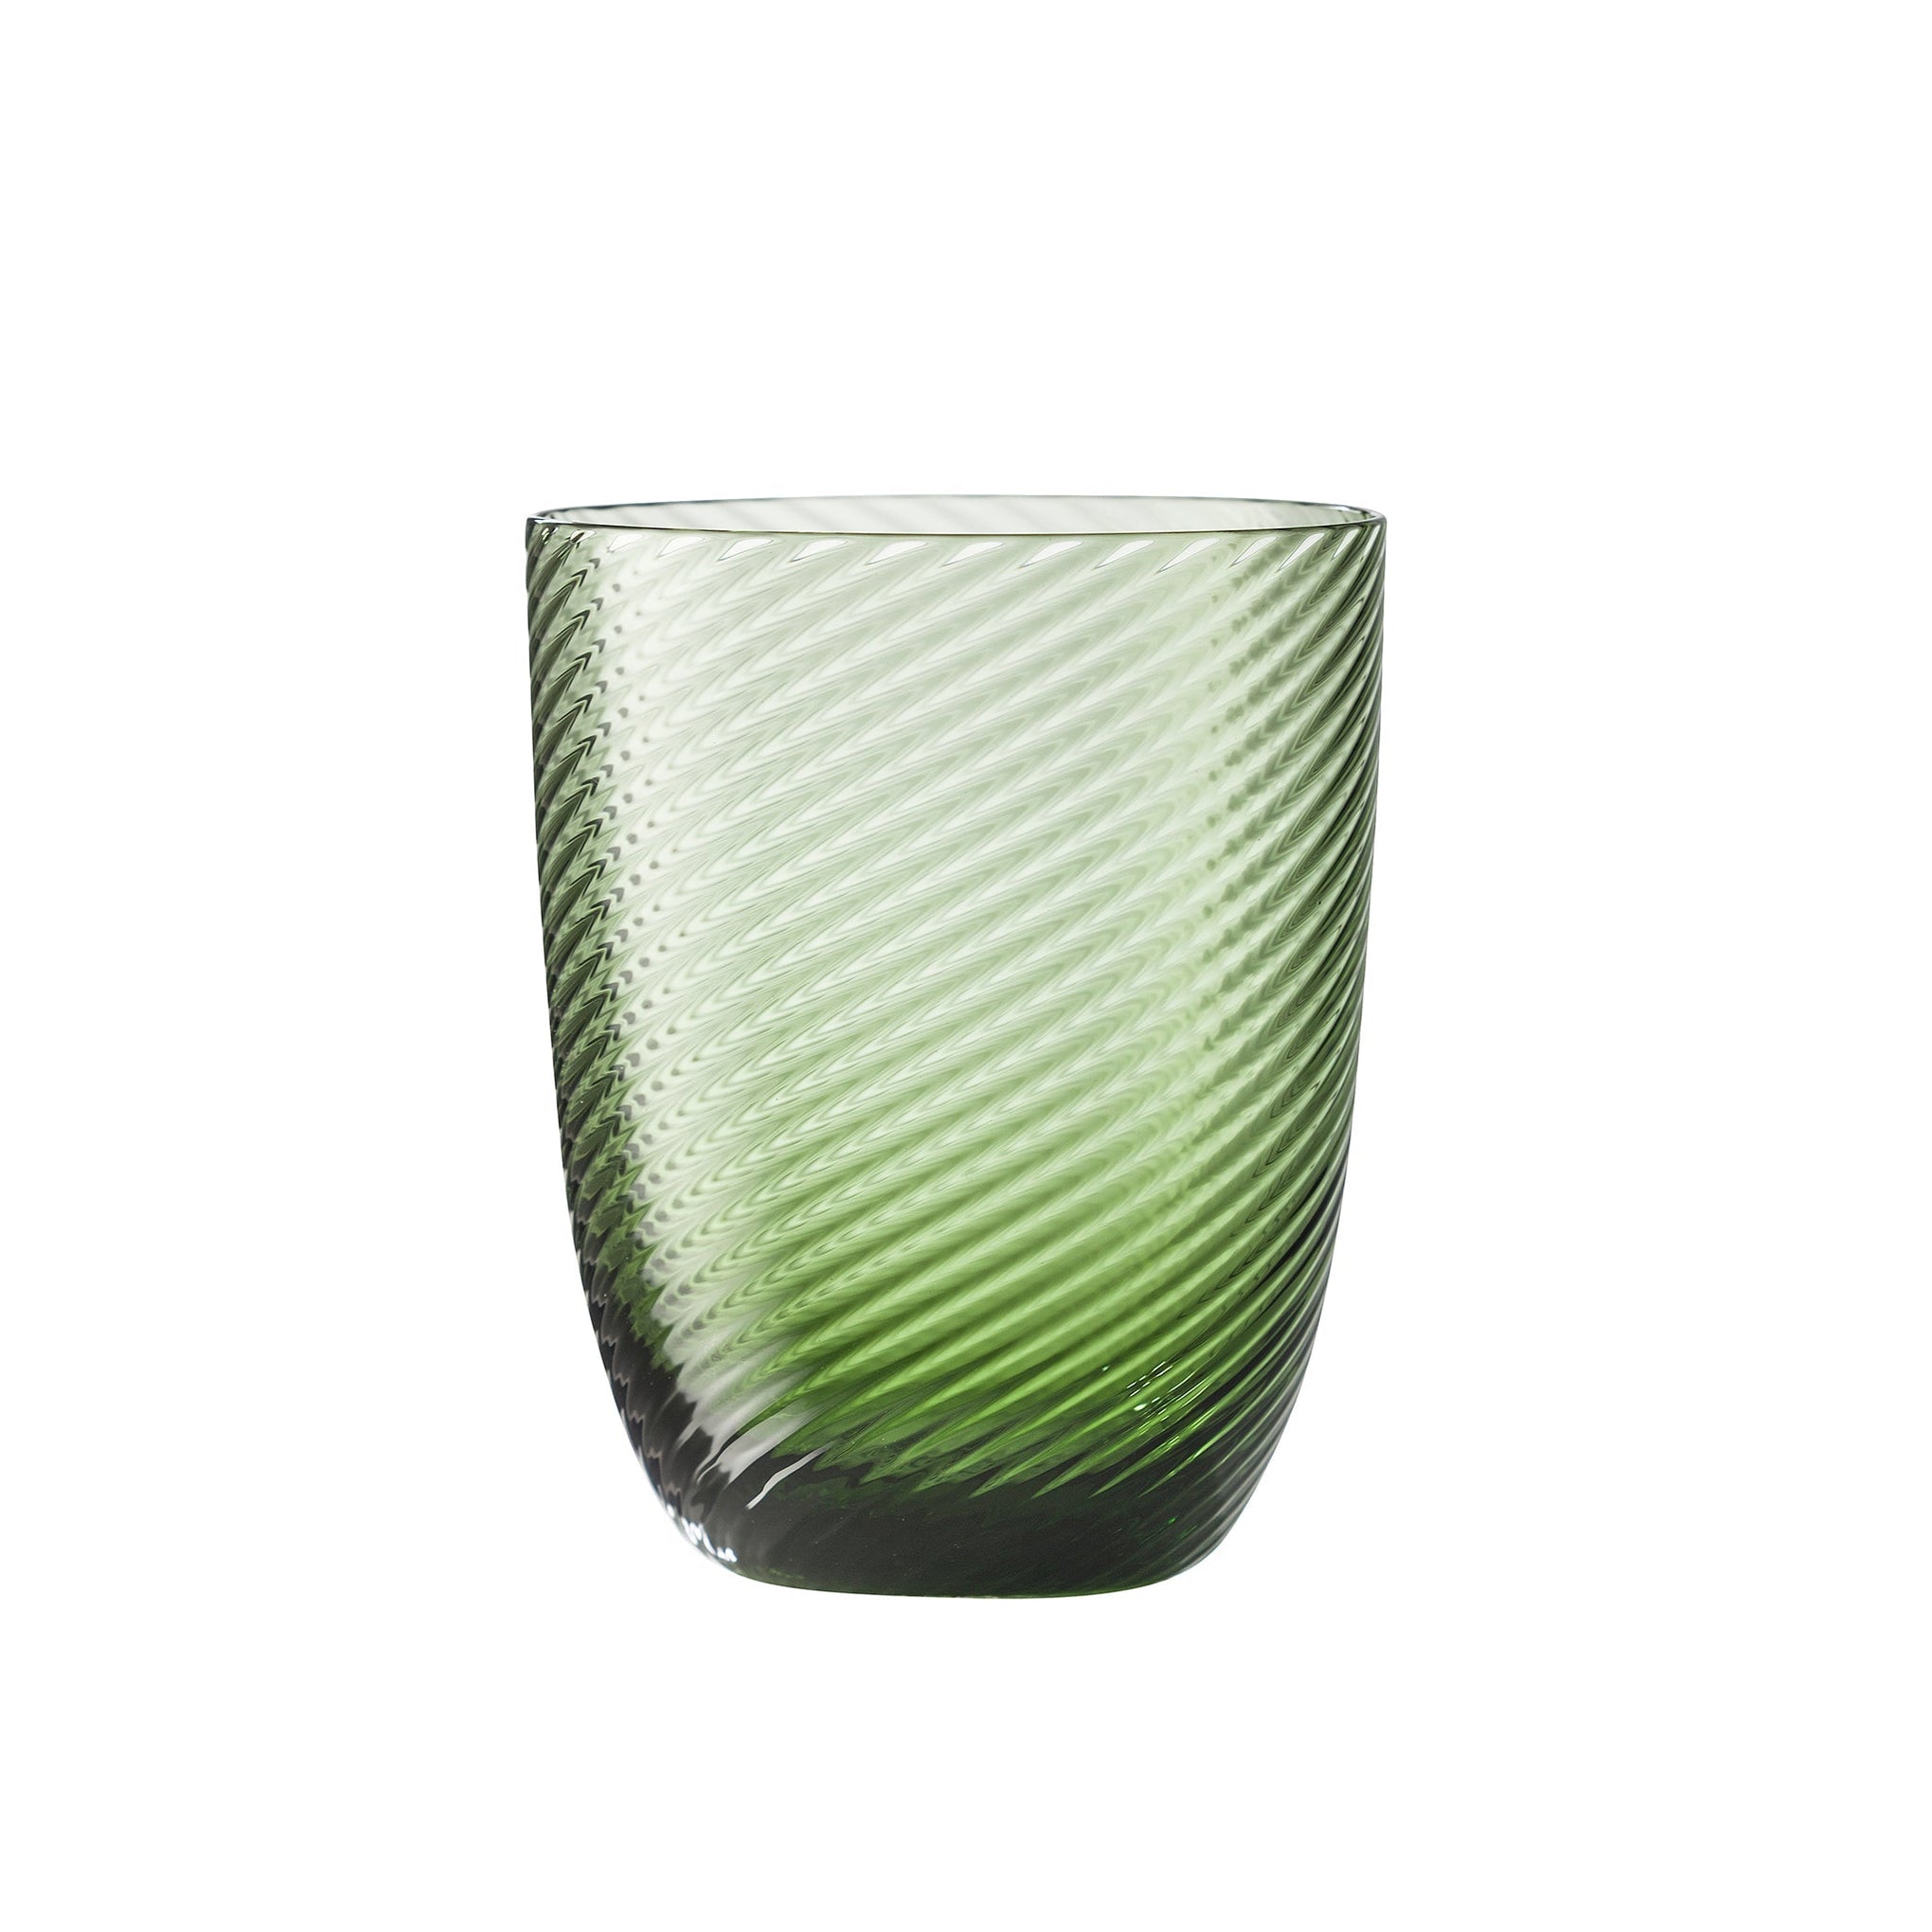 Nason Moretti Idra Murano Water Glasses Pistachio Green